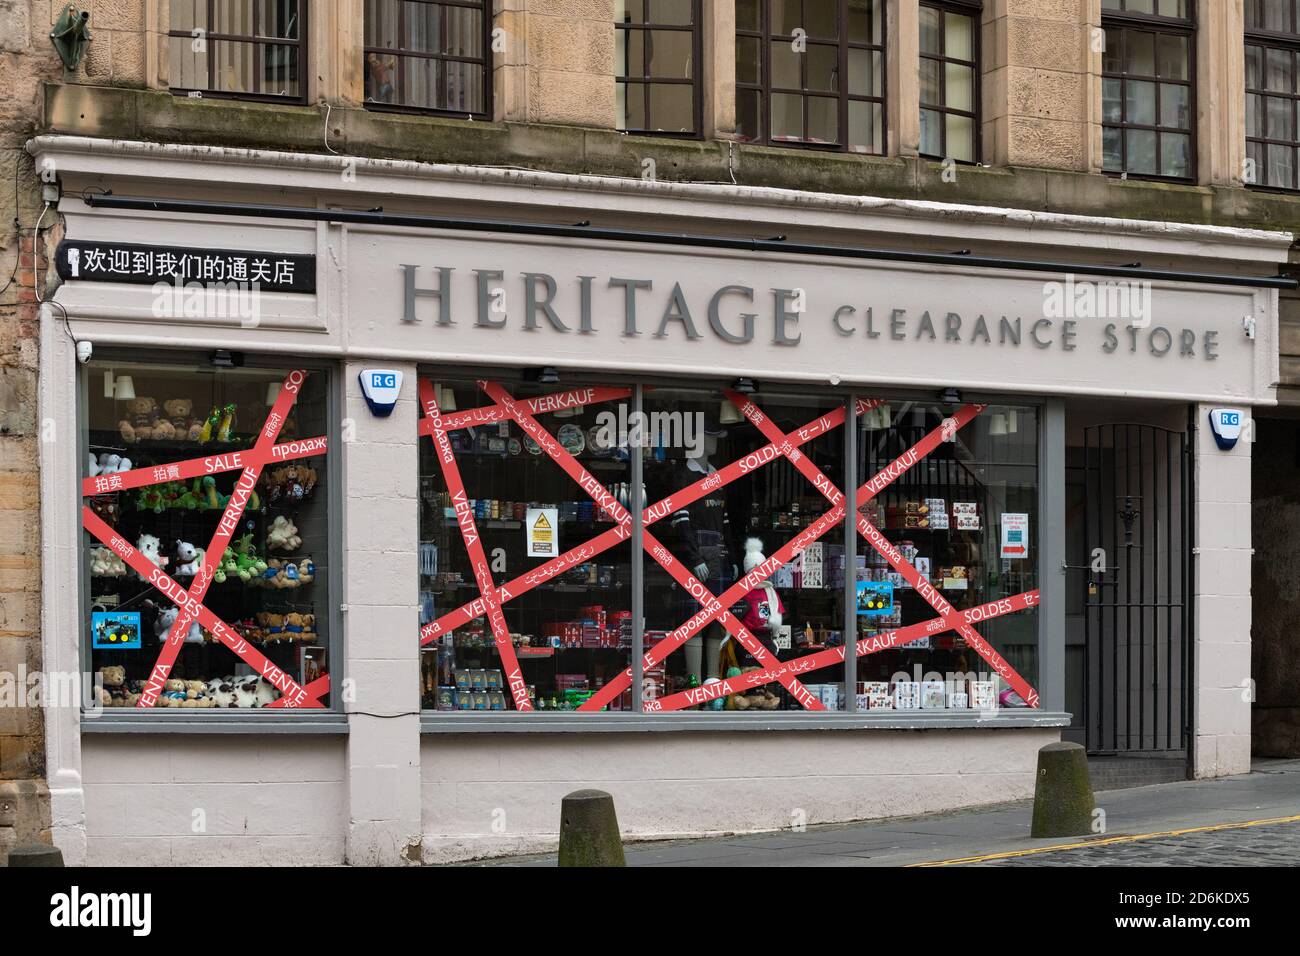 Verkaufsschilder in verschiedenen Sprachen während der Coronavirus-Pandemie - Heritage Clearance Store, Edinburgh Royal Mile, Edinburgh, Schottland, Großbritannien Stockfoto